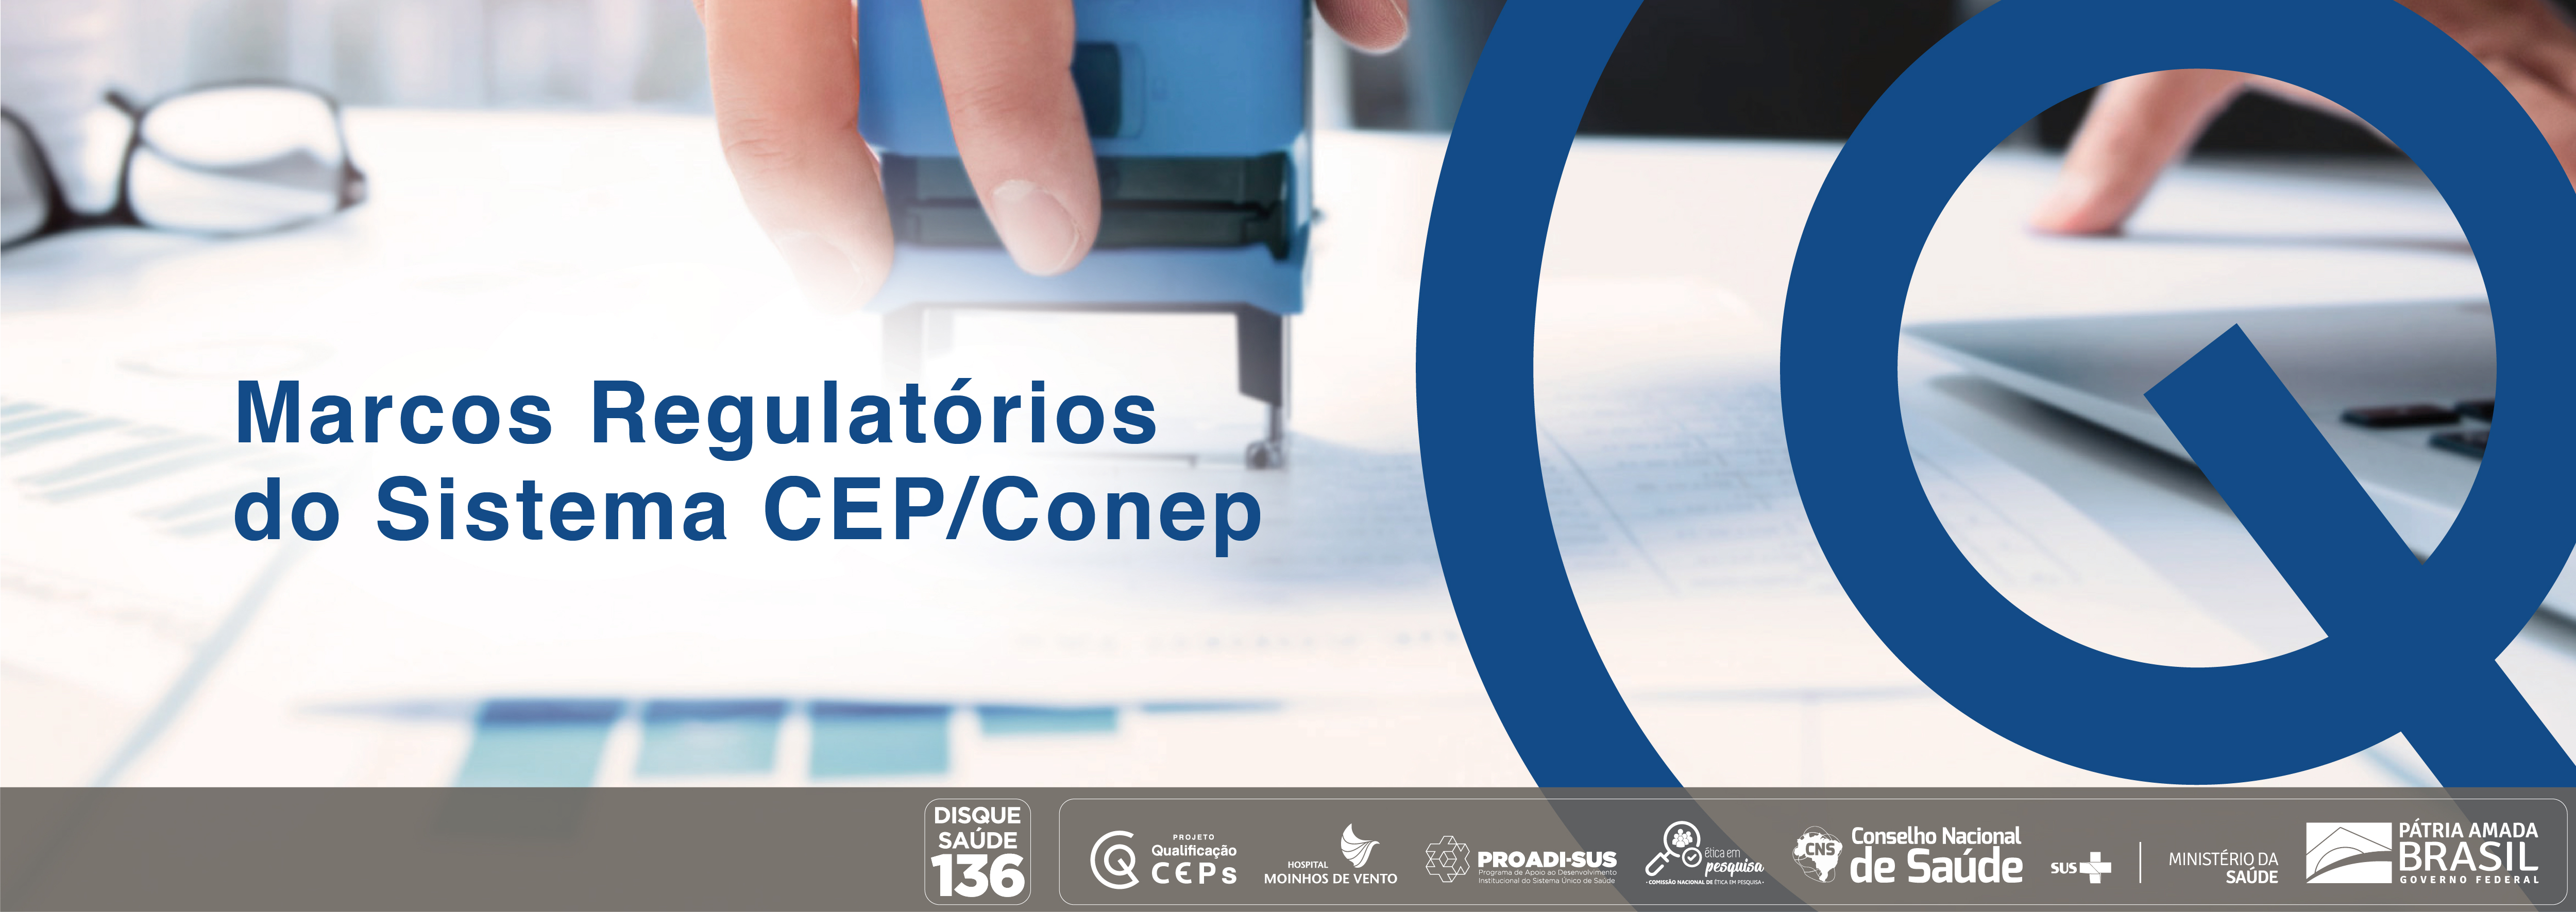 Marcos regulatórios do Sistema CEP/Conep para o processo de análise ética de projetos de pesquisa CEP_2021_MRSCCPAPP